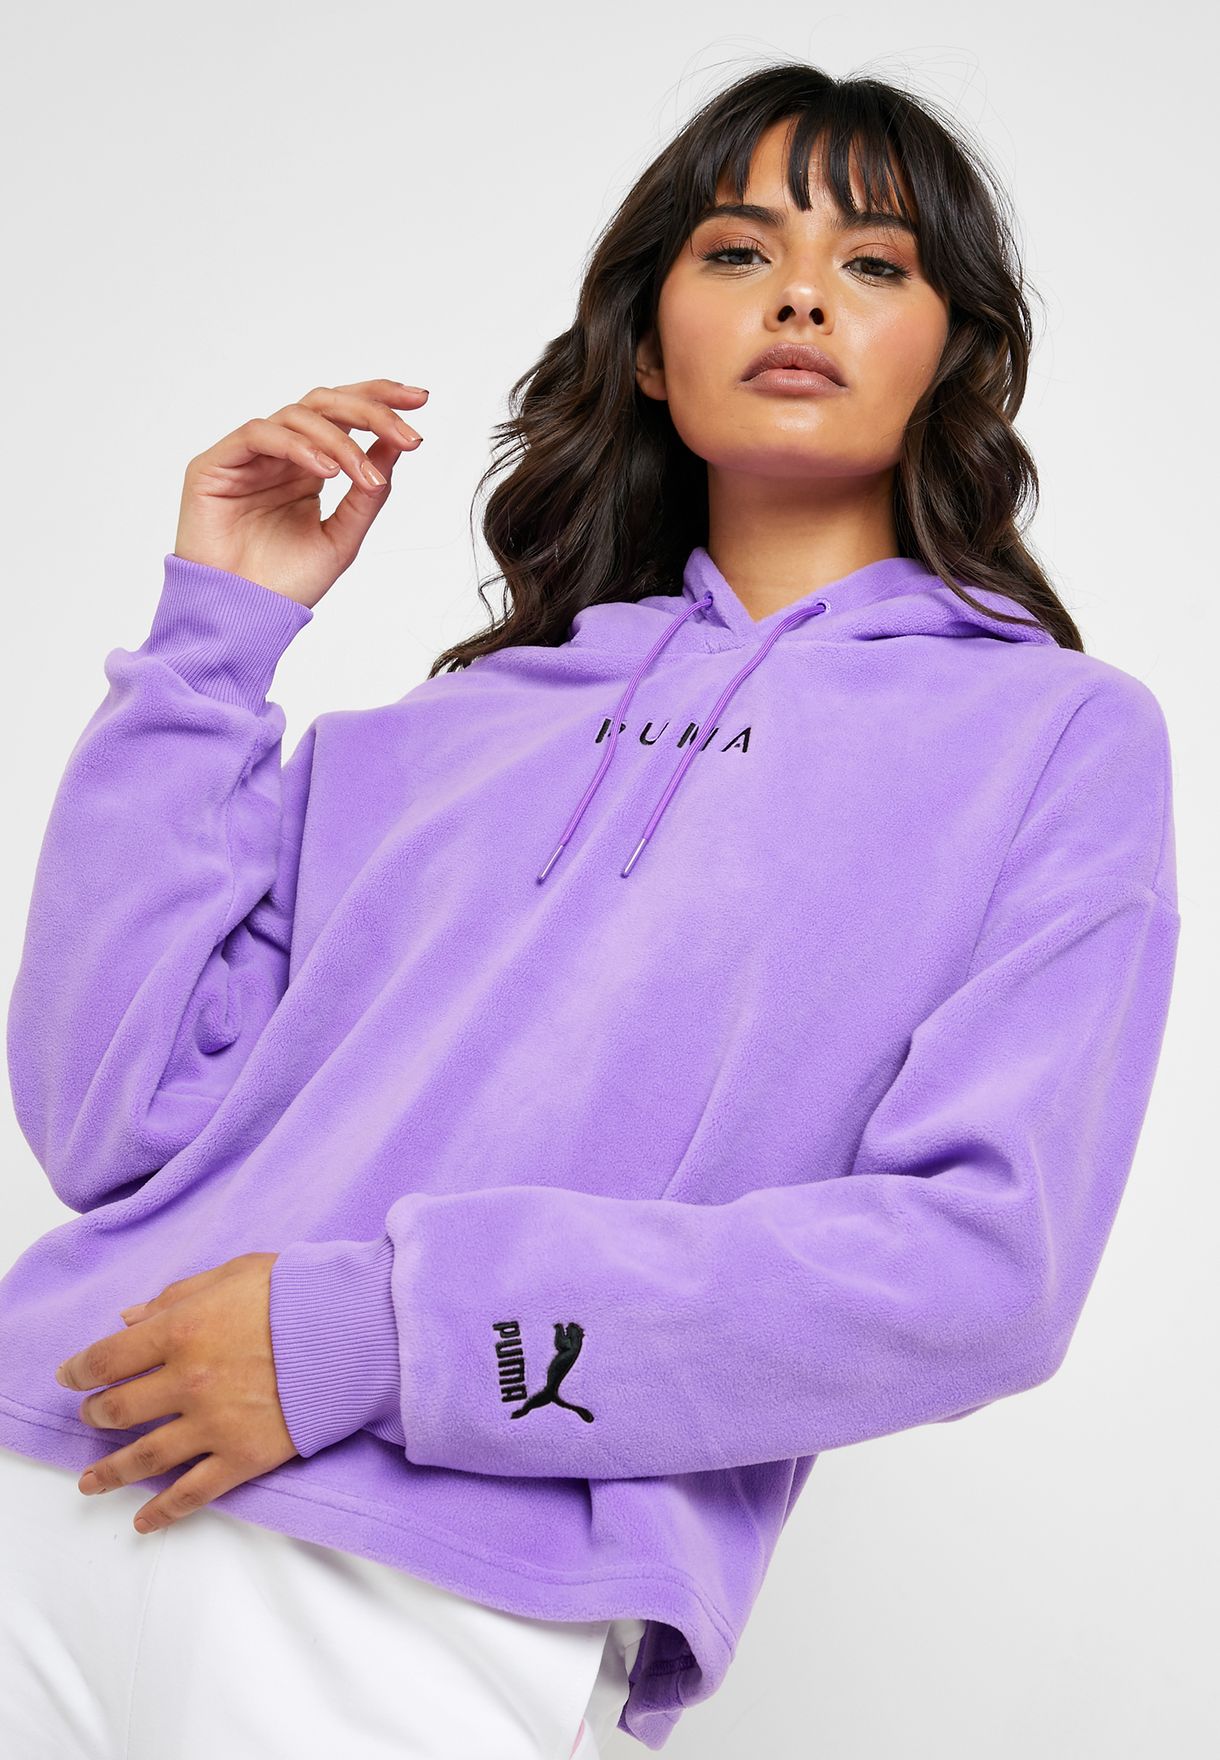 skechers sweatshirts womens purple